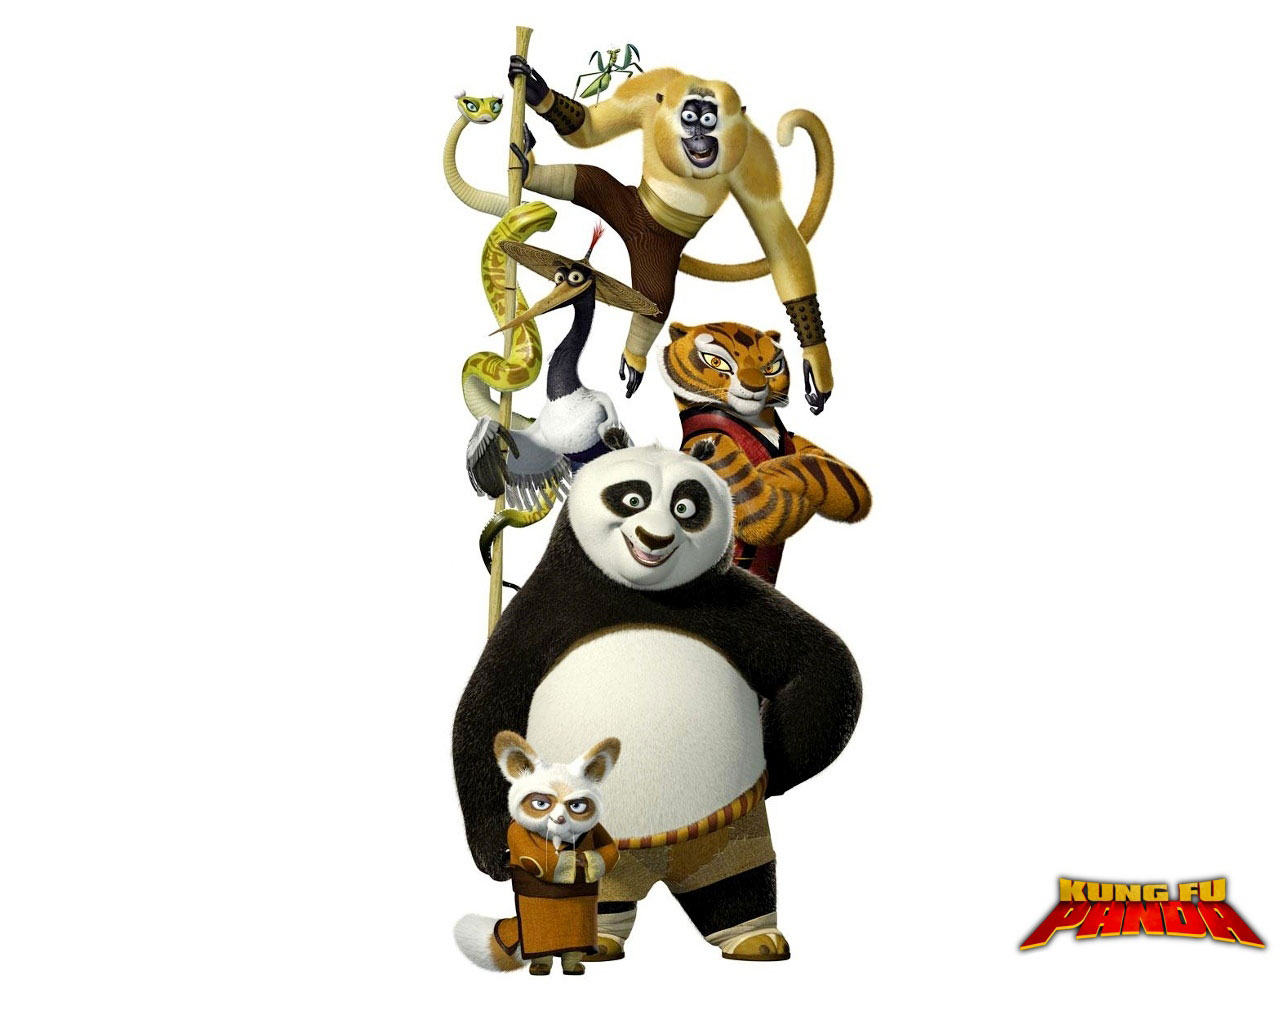 Kung Fu Panda Po Kung Fu Panda Shifu Kung Fu Panda Tigress Kung Fu Panda Viper Monkey Mantis Kung Fu 1280x1024